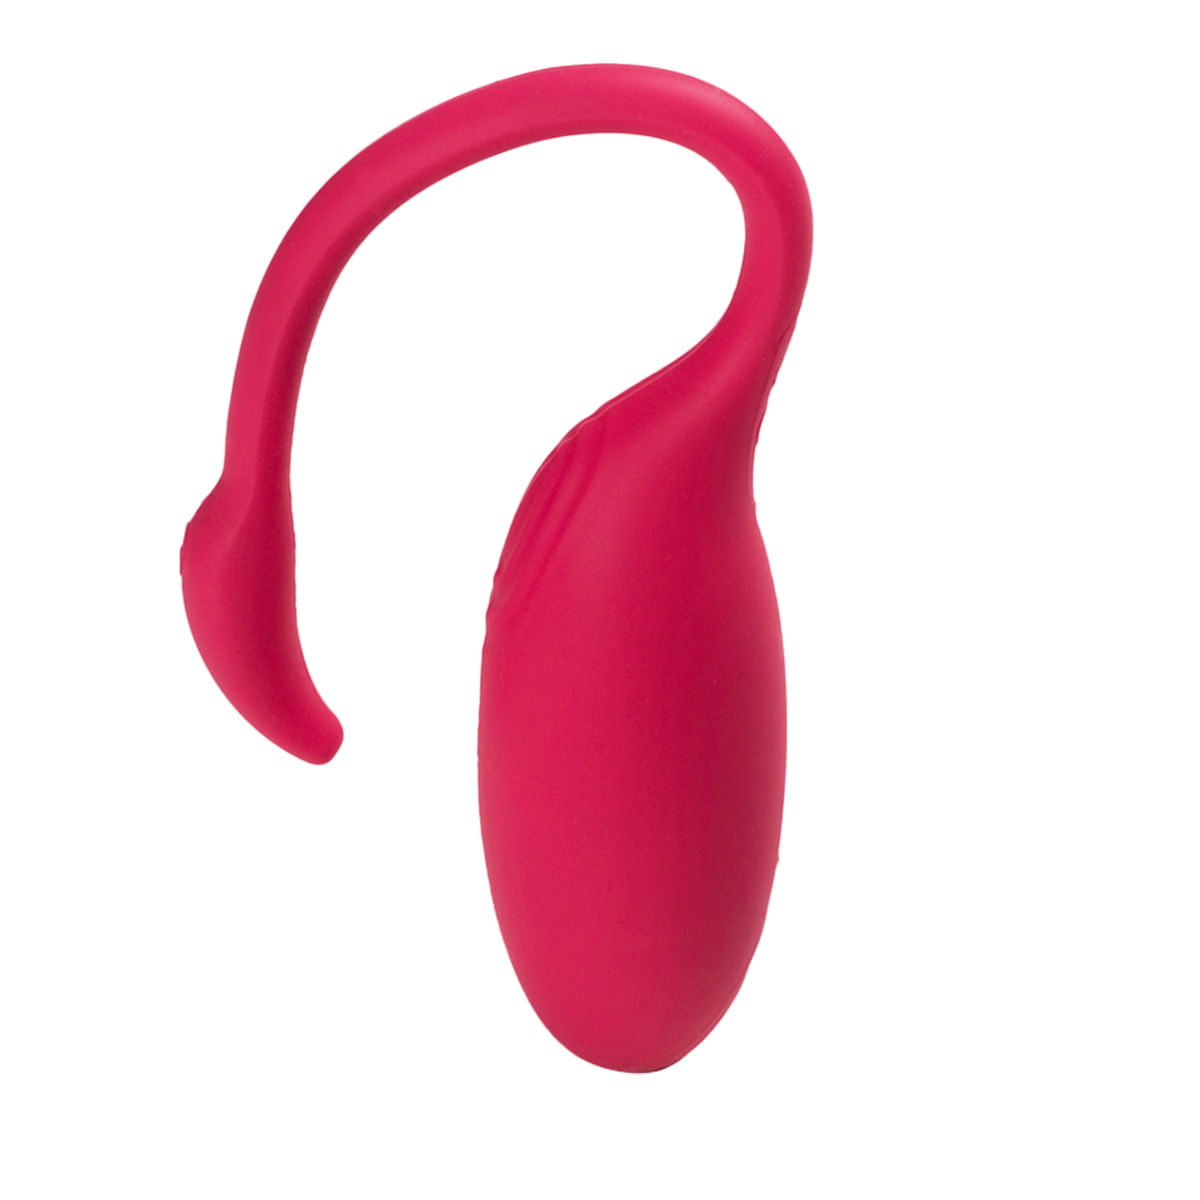 Flamingo Magic Motion Vibrador Ponto G e Clitóris com 9 Modos de Vibração e Controle via App Adão e